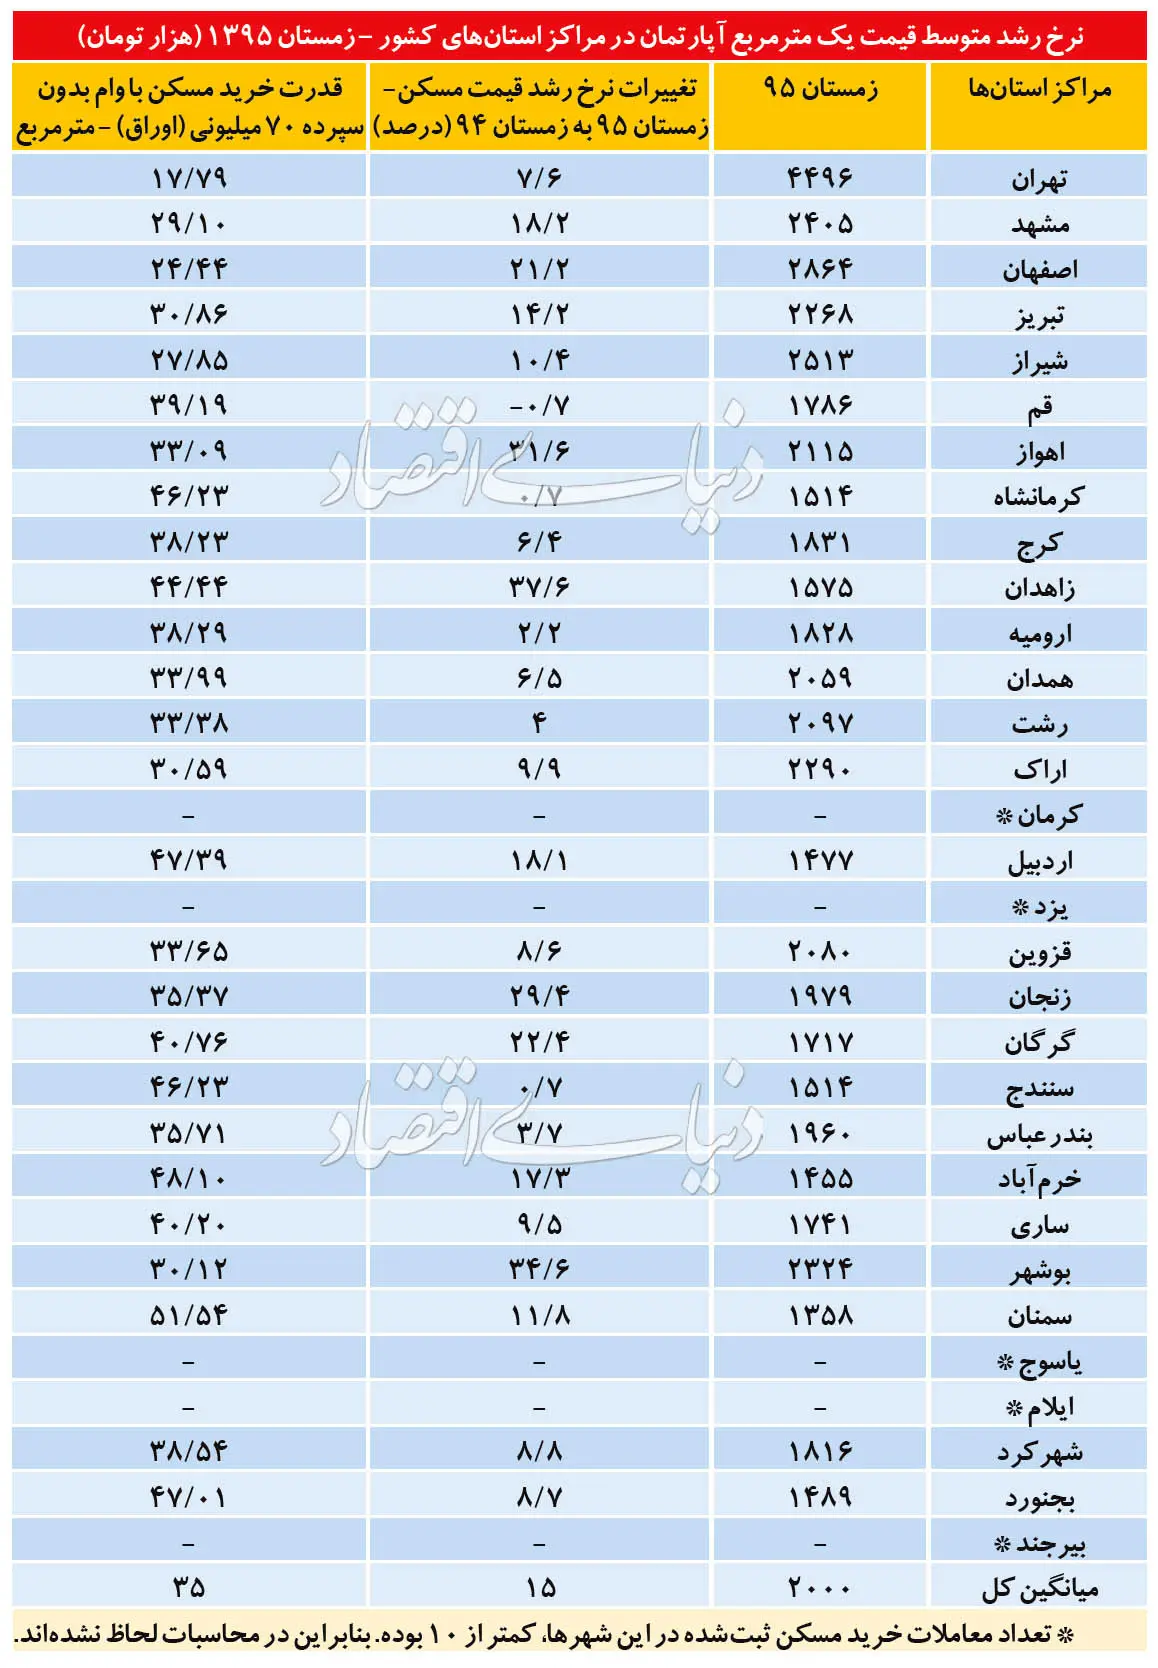 آخرین وضعیت مسکن در 31 استان کشور/ پایتخت در رتبه نهم کمترین تورم مسکن